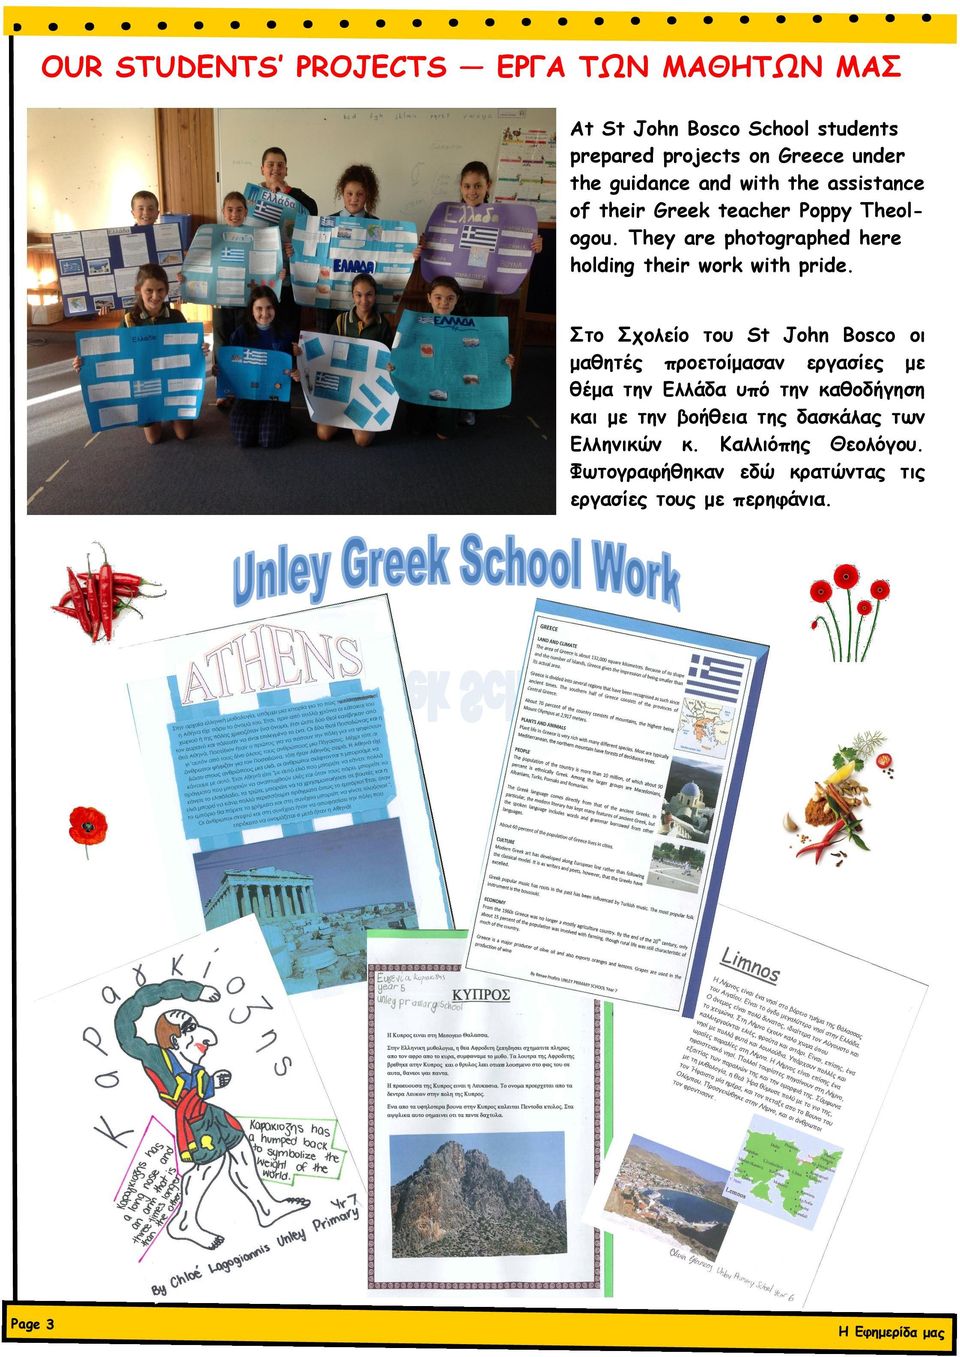 Στο Σχολείο του St John Bosco οι μαθητές προετοίμασαν εργασίες με θέμα την Ελλάδα υπό την καθοδήγηση και με την βοήθεια